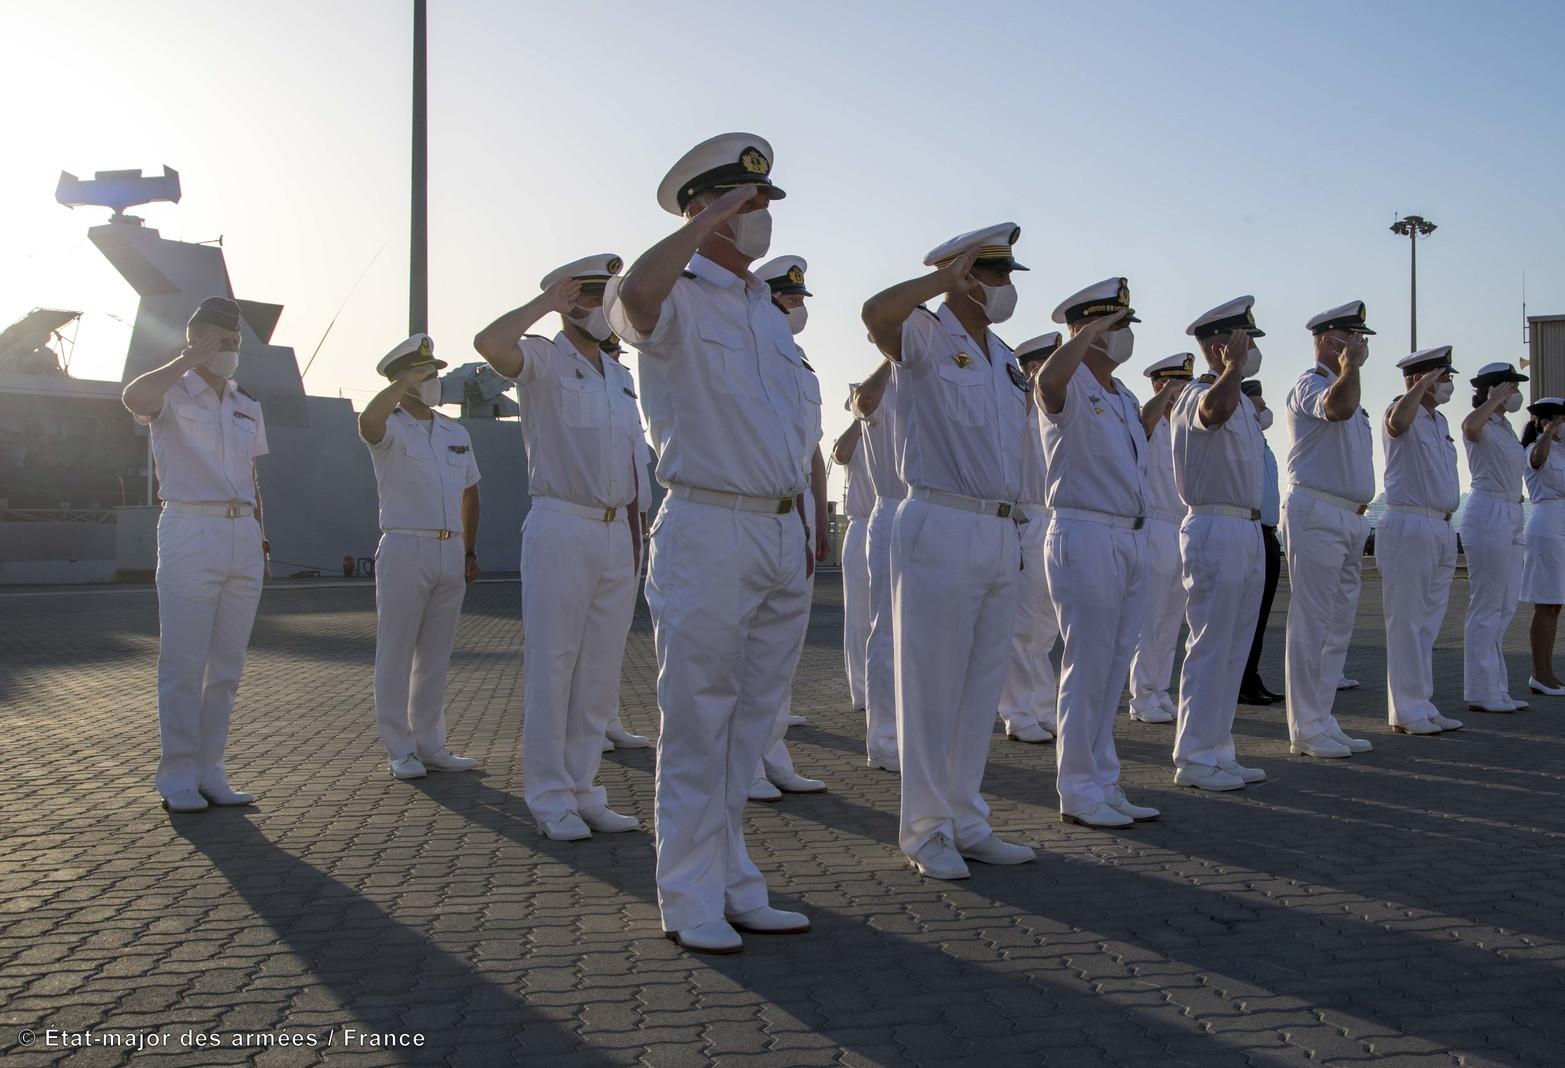 Le 1er mars 2022, le capitaine de vaisseau Nicolas du Chéné a remis le commandement de l’opération AGENOR à l’amiral de flottille Tanguy Botman, des forces armées belges. La cérémonie s’est déroulé